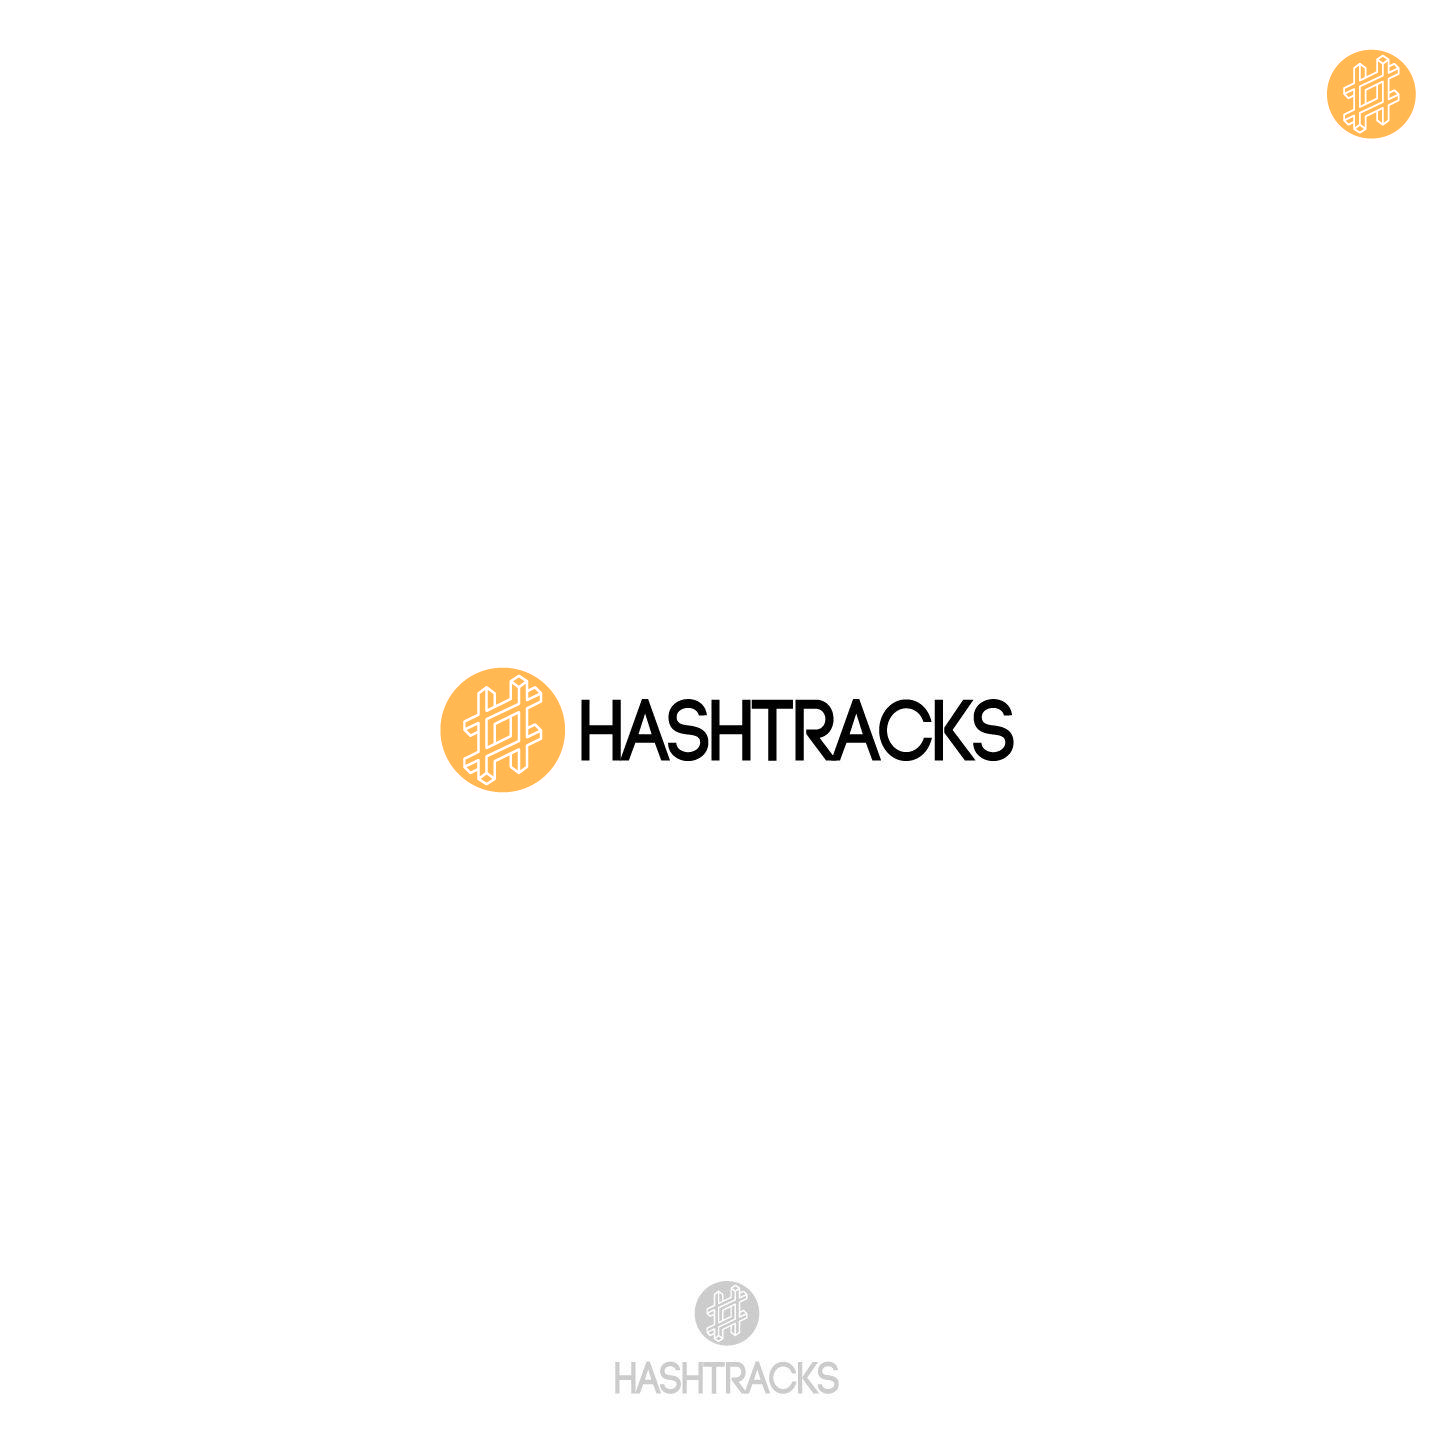 Fox Internet Logo - Elegant, Playful, Internet Logo Design for Hashtracks